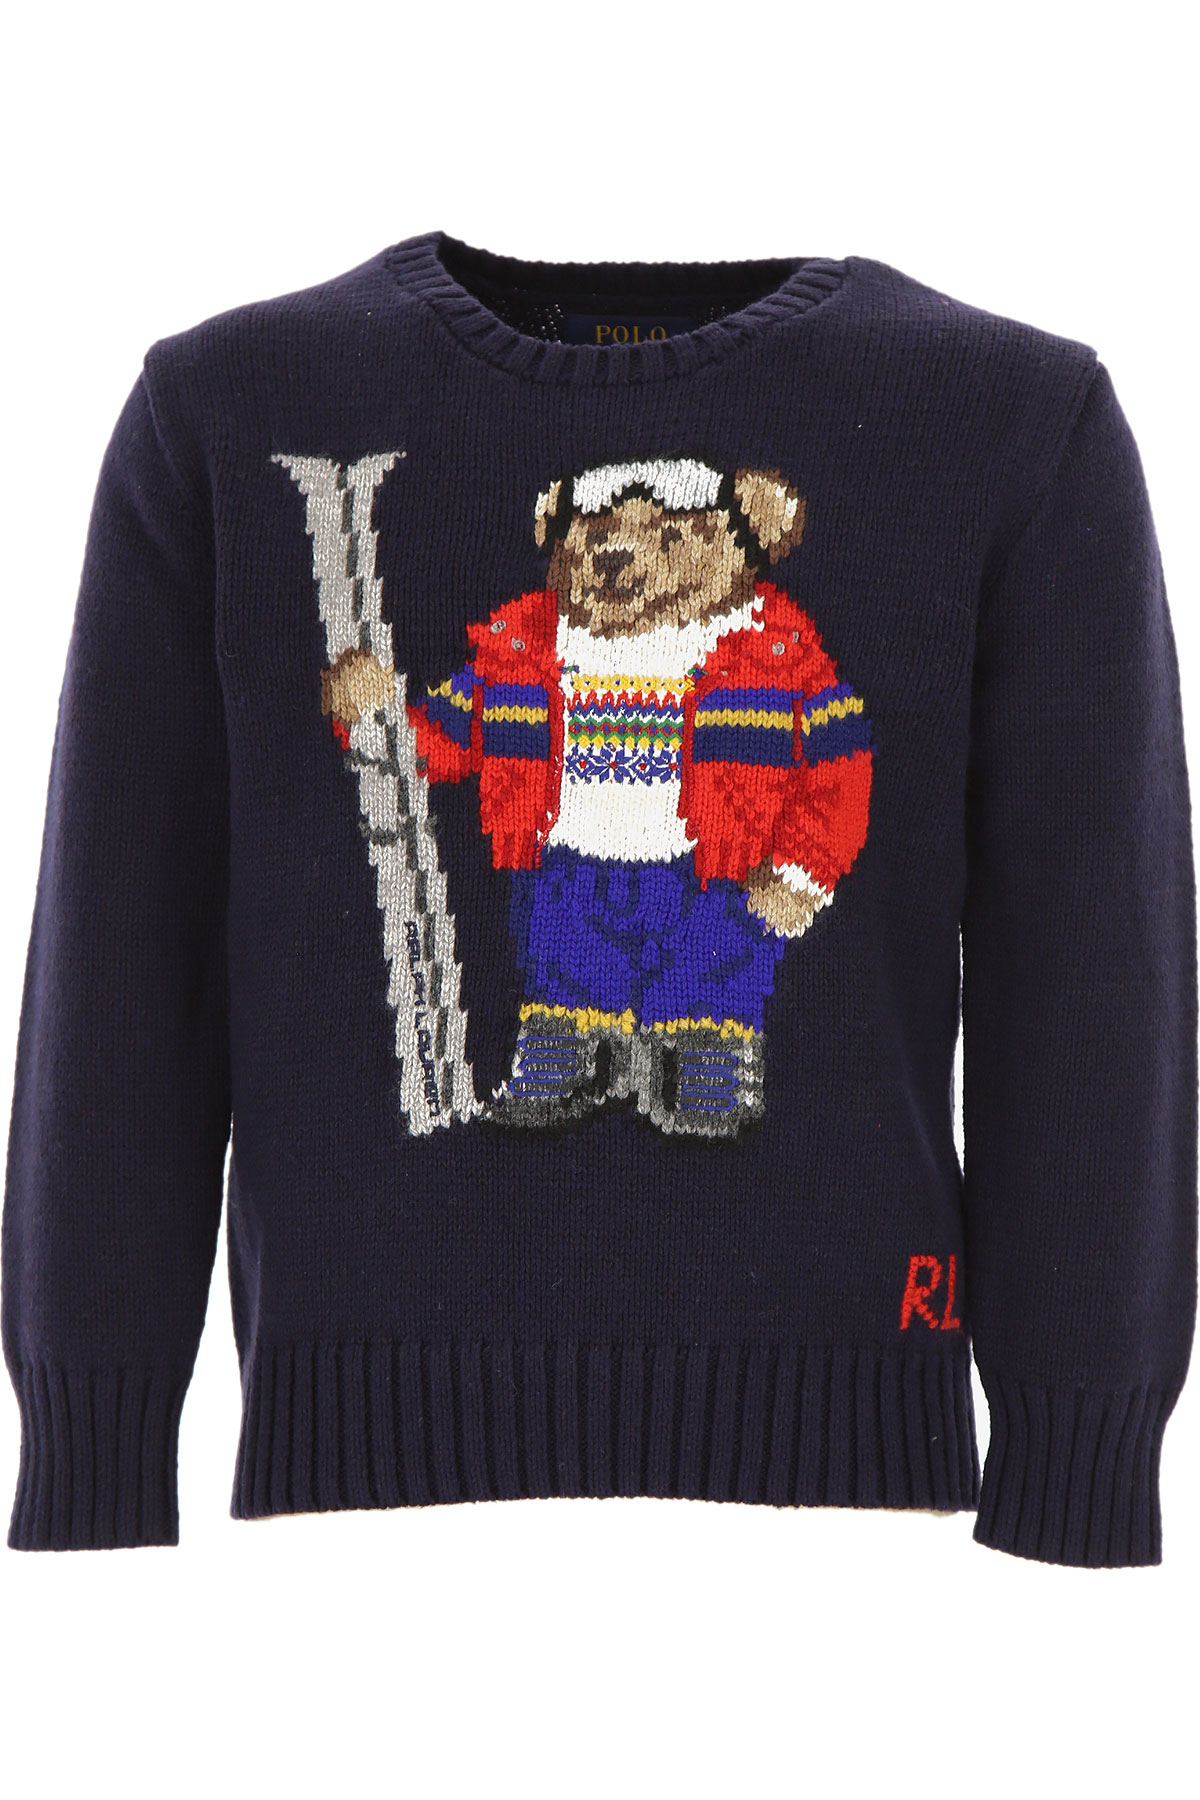 Ralph Lauren Kinder Pullover für Jungen Günstig im Sale, Marine blau, Baumwolle, 2017, M S